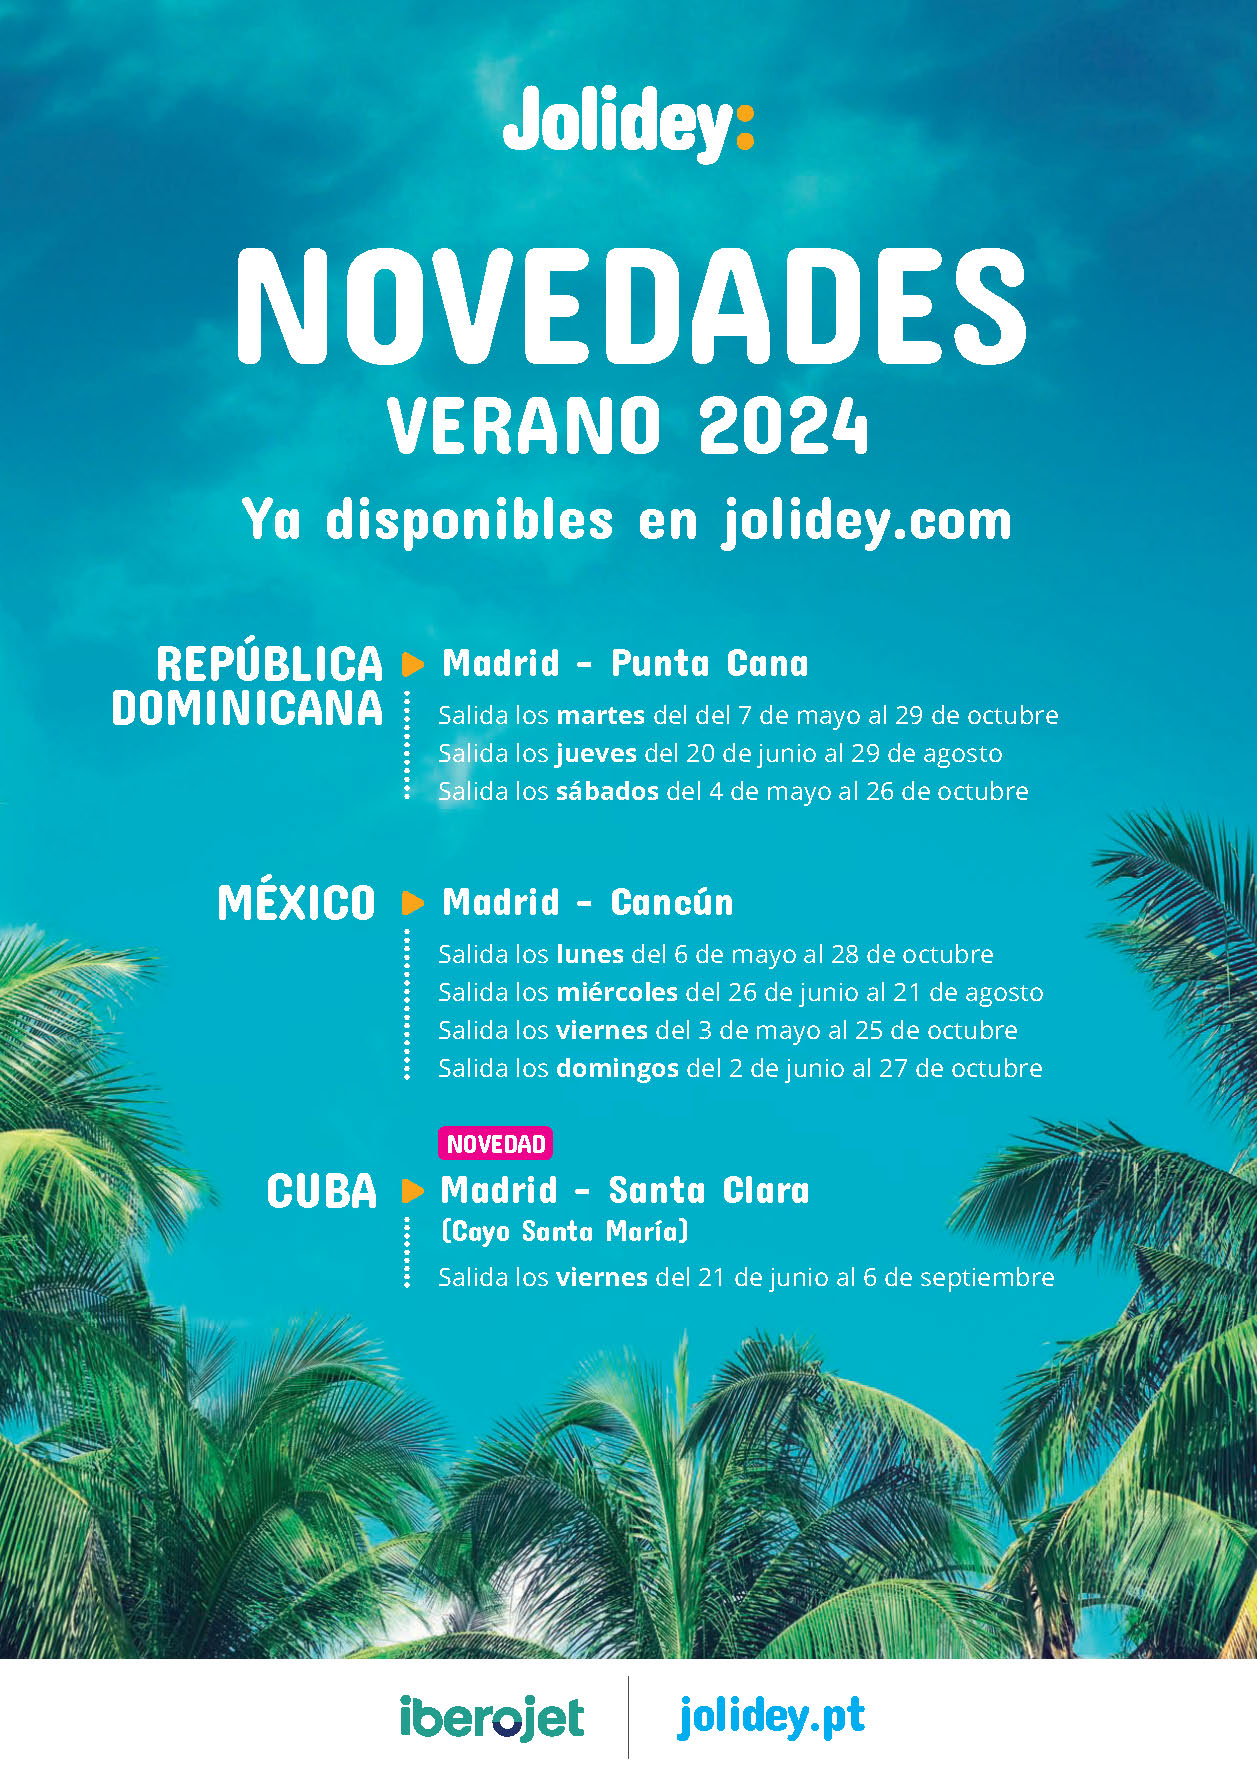 Oferta Jolidey Novedades Verano 2024 Riviera Maya Punta Cana Cayo Santa Maria 9 dias salidas Mayo a Octubre en vuelo directo desde Madrid